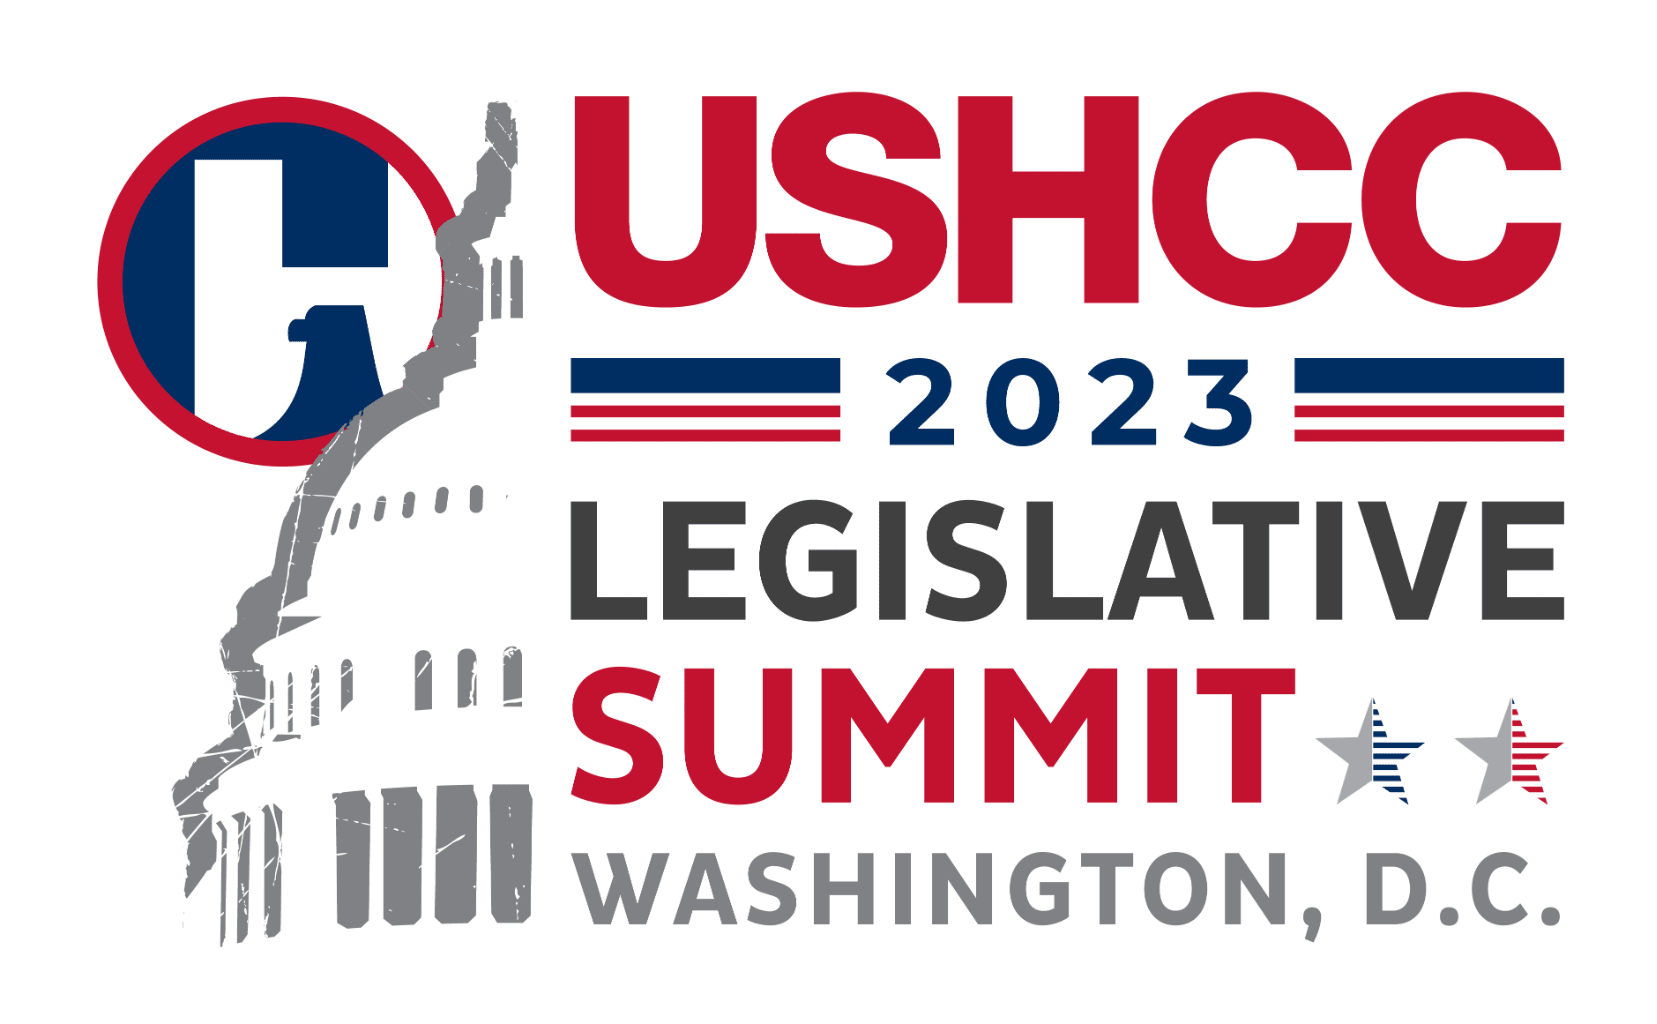 USHCC 2023 Legislative Summit